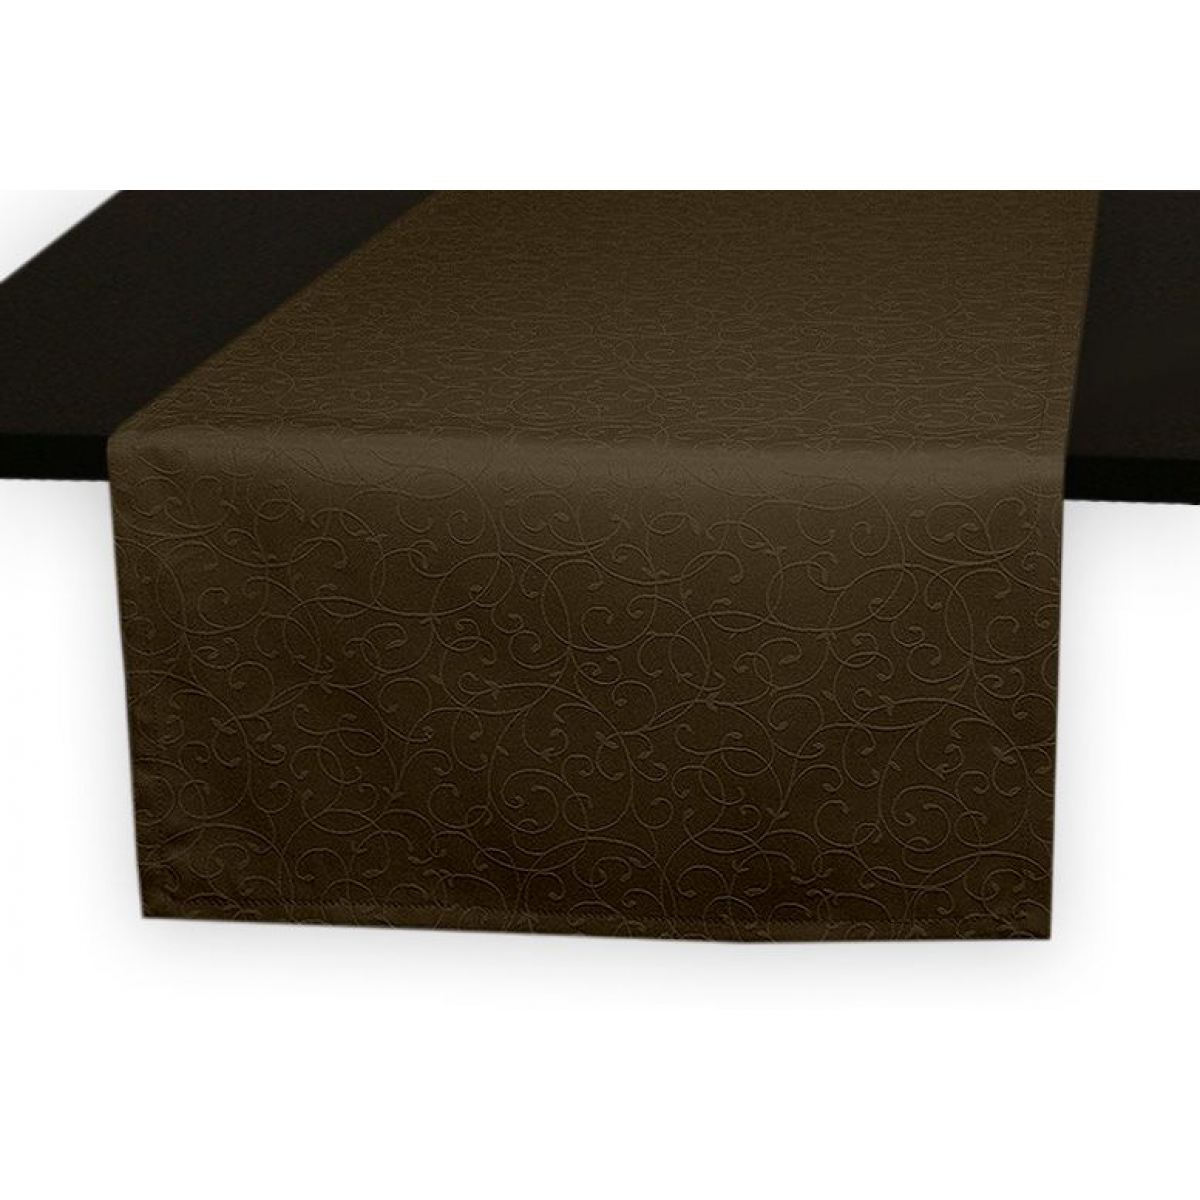 Дорожка на стол 120х45 см. ткань коллекции Ричард рисунок тонкий вензель 1812 цвет темно-коричневый